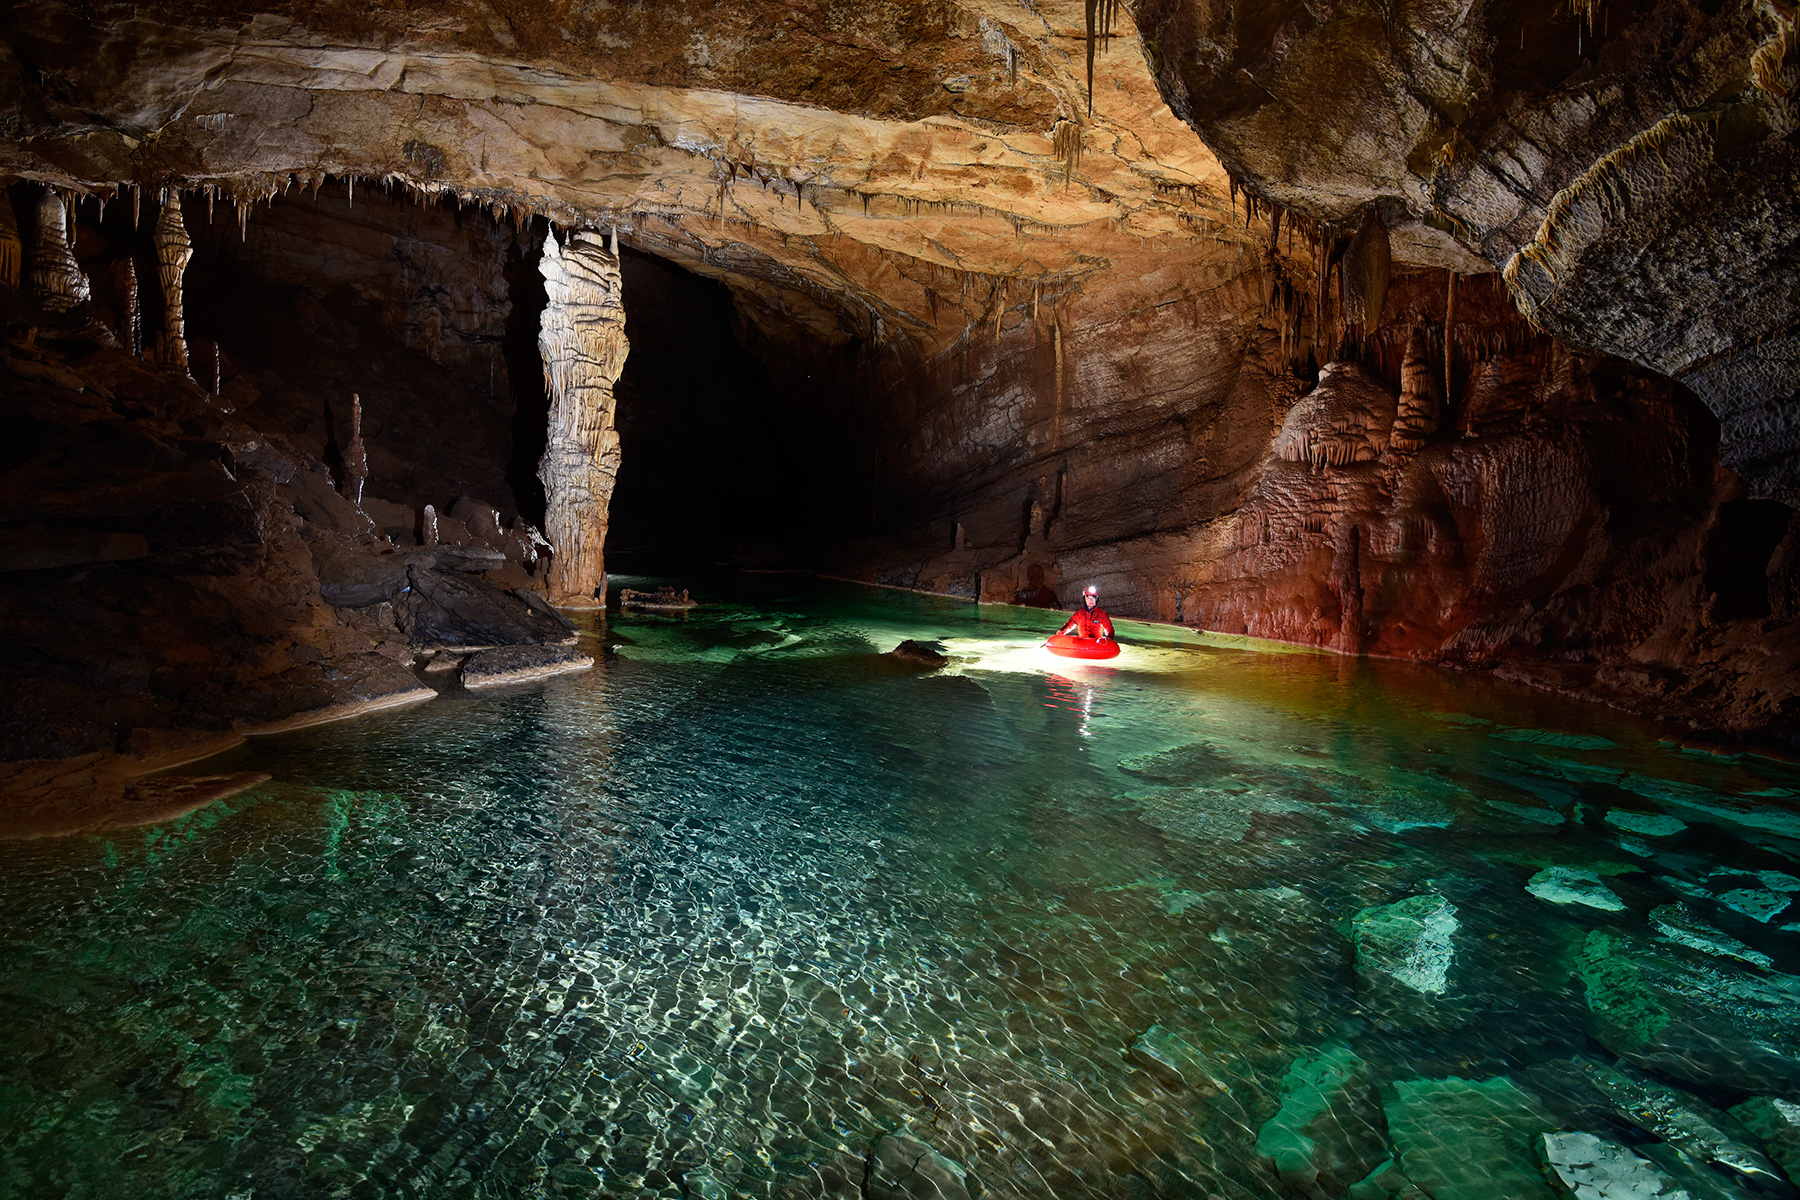 Krizna Jama (Slovénie) - Spéléo progressant en canot dans une rivière souterraine aux eaux vertes (grand pilier blanc)